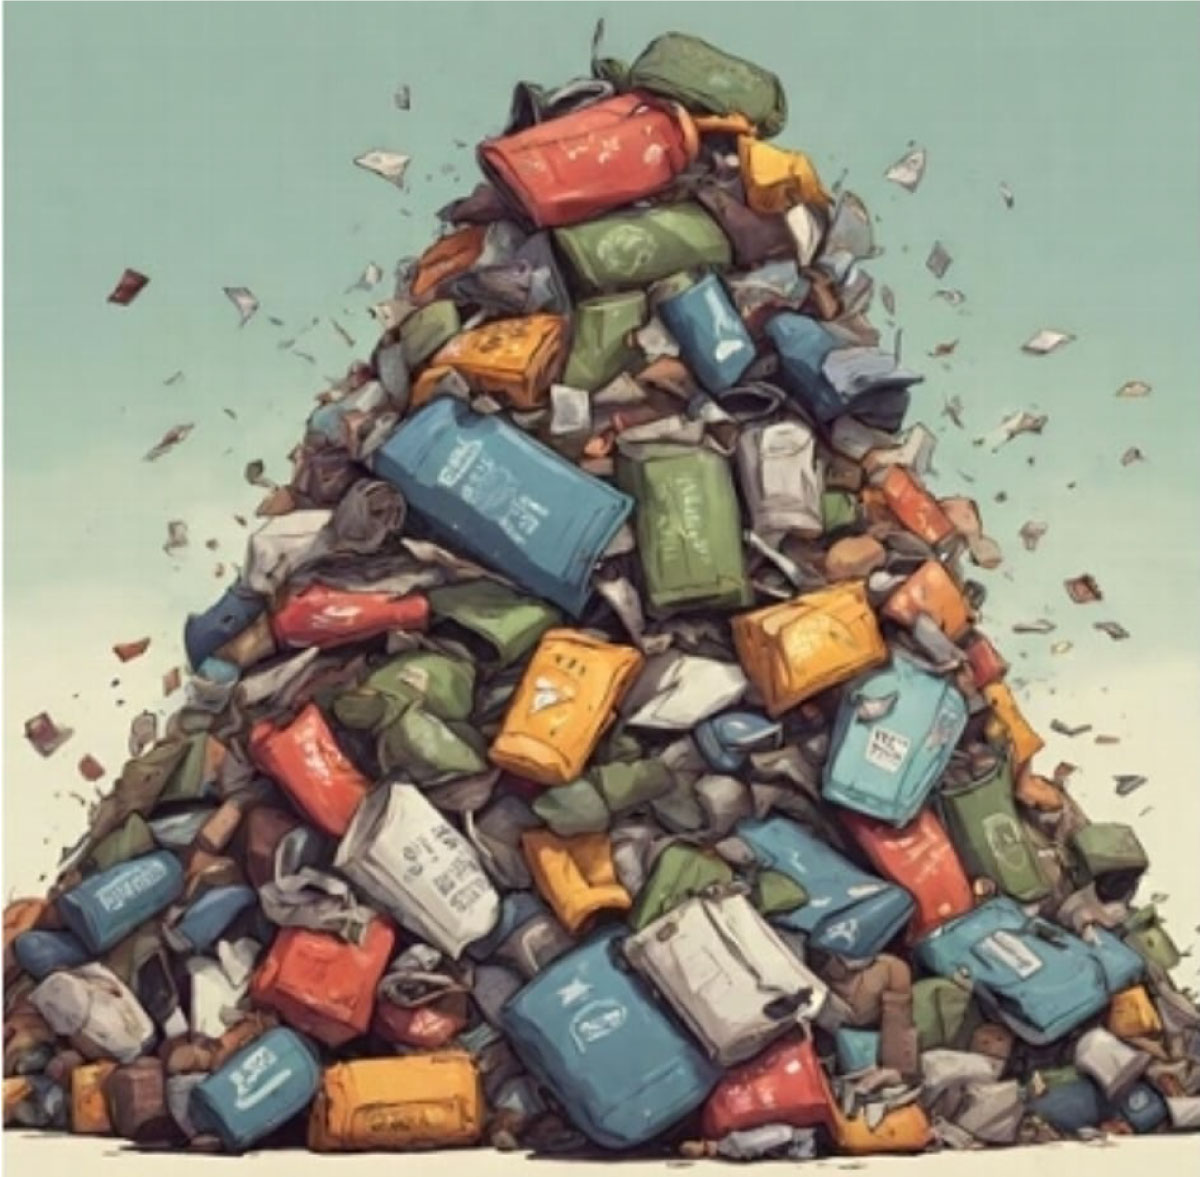 Illustration of a trash pile